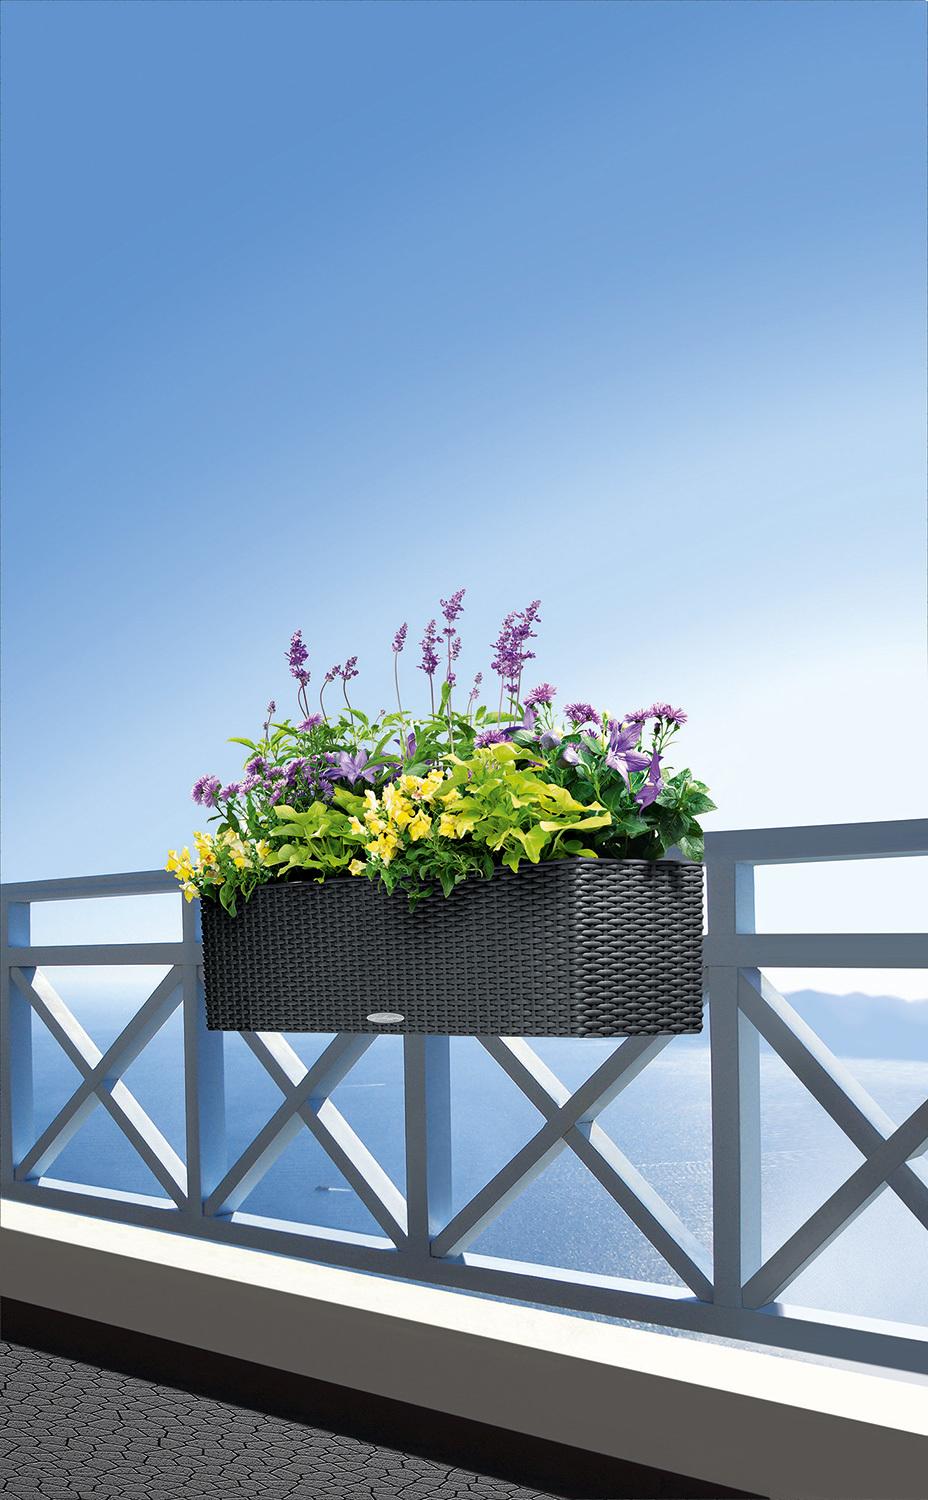 BALCONERA COTTAGE balcony flower box set, 80x19/19 cm, ganite